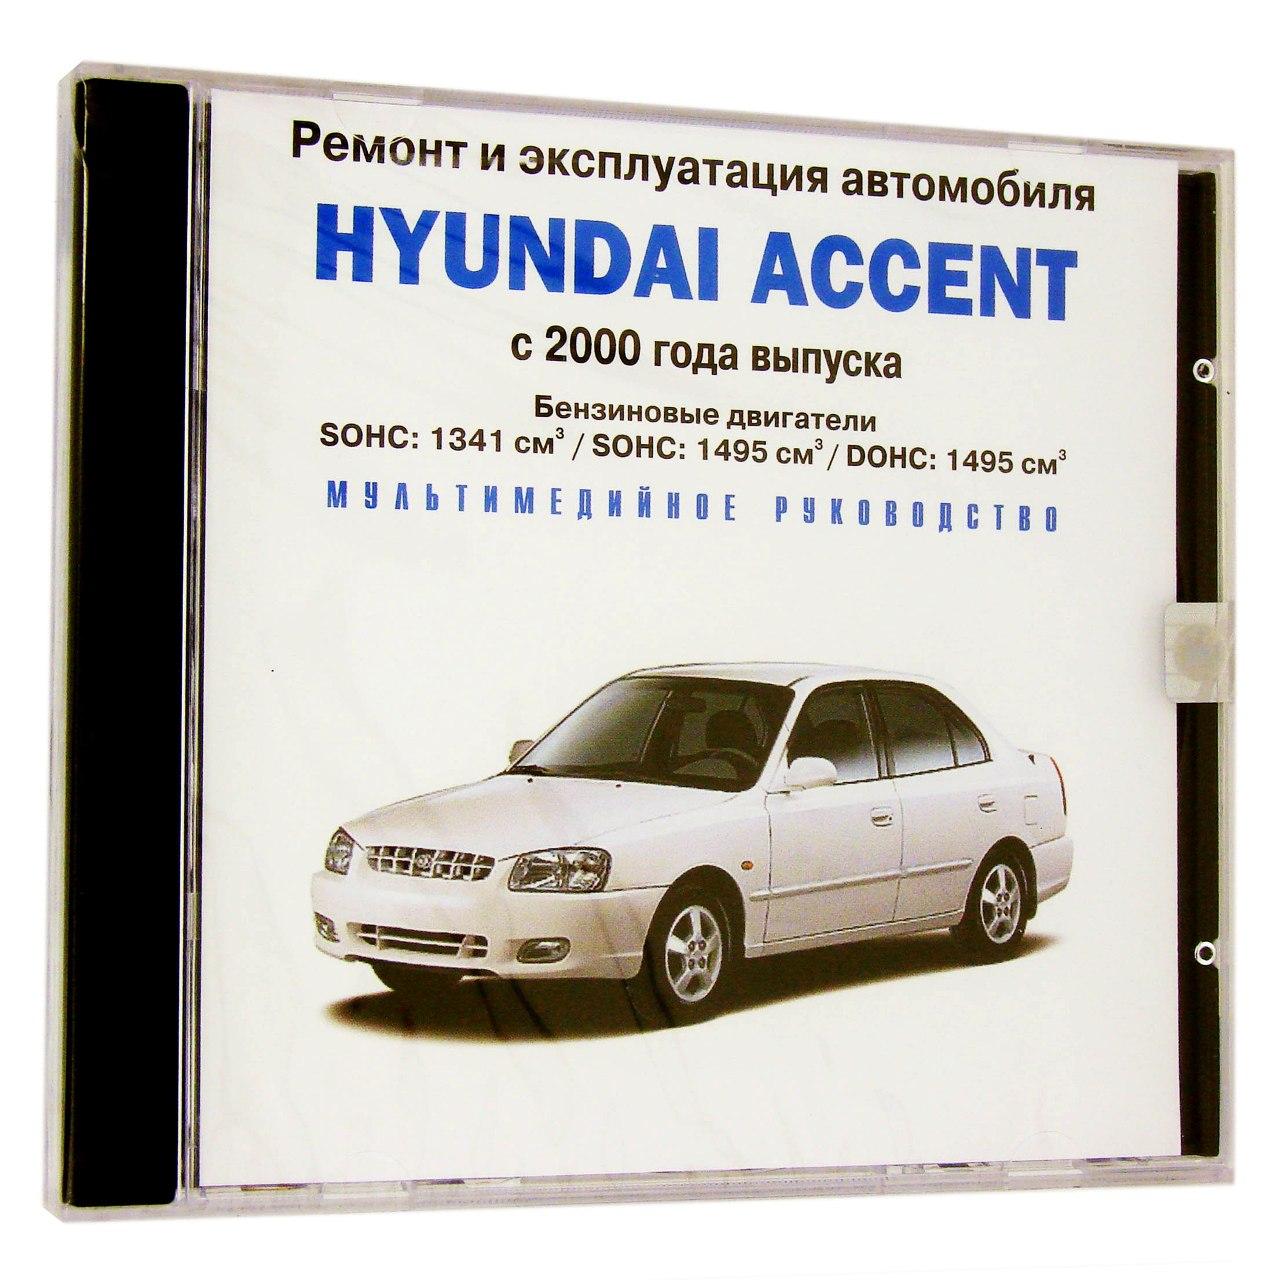 Компьютерный компакт-диск Hyundai Accent c 2000 Ремонт и эксплуатация автомобиля. (ПК), фирма "RMG Multimedia", 1CD